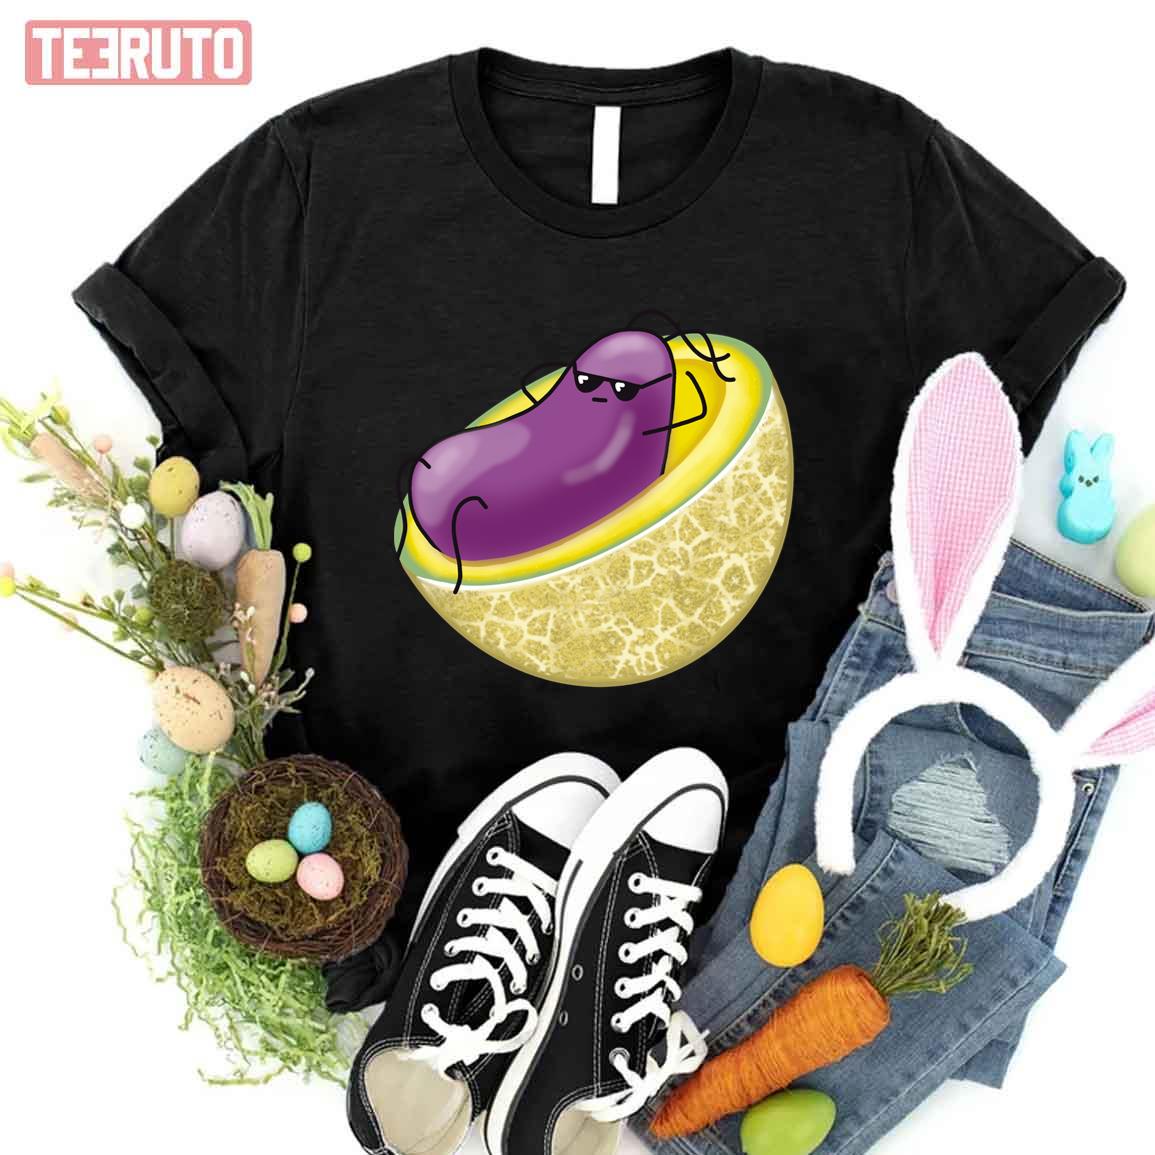 Listeria And Cantaloupe Cute Unisex T-Shirt